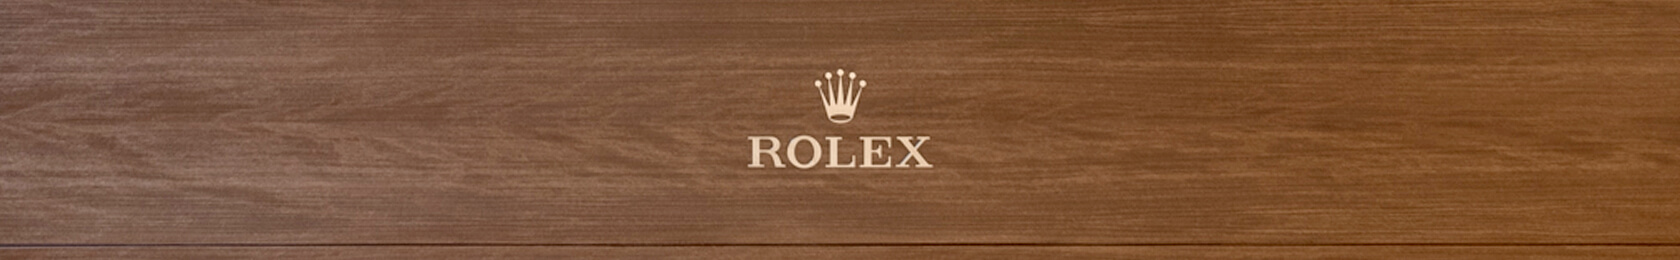 Rolex Showroom at Alvin Goldfarb 